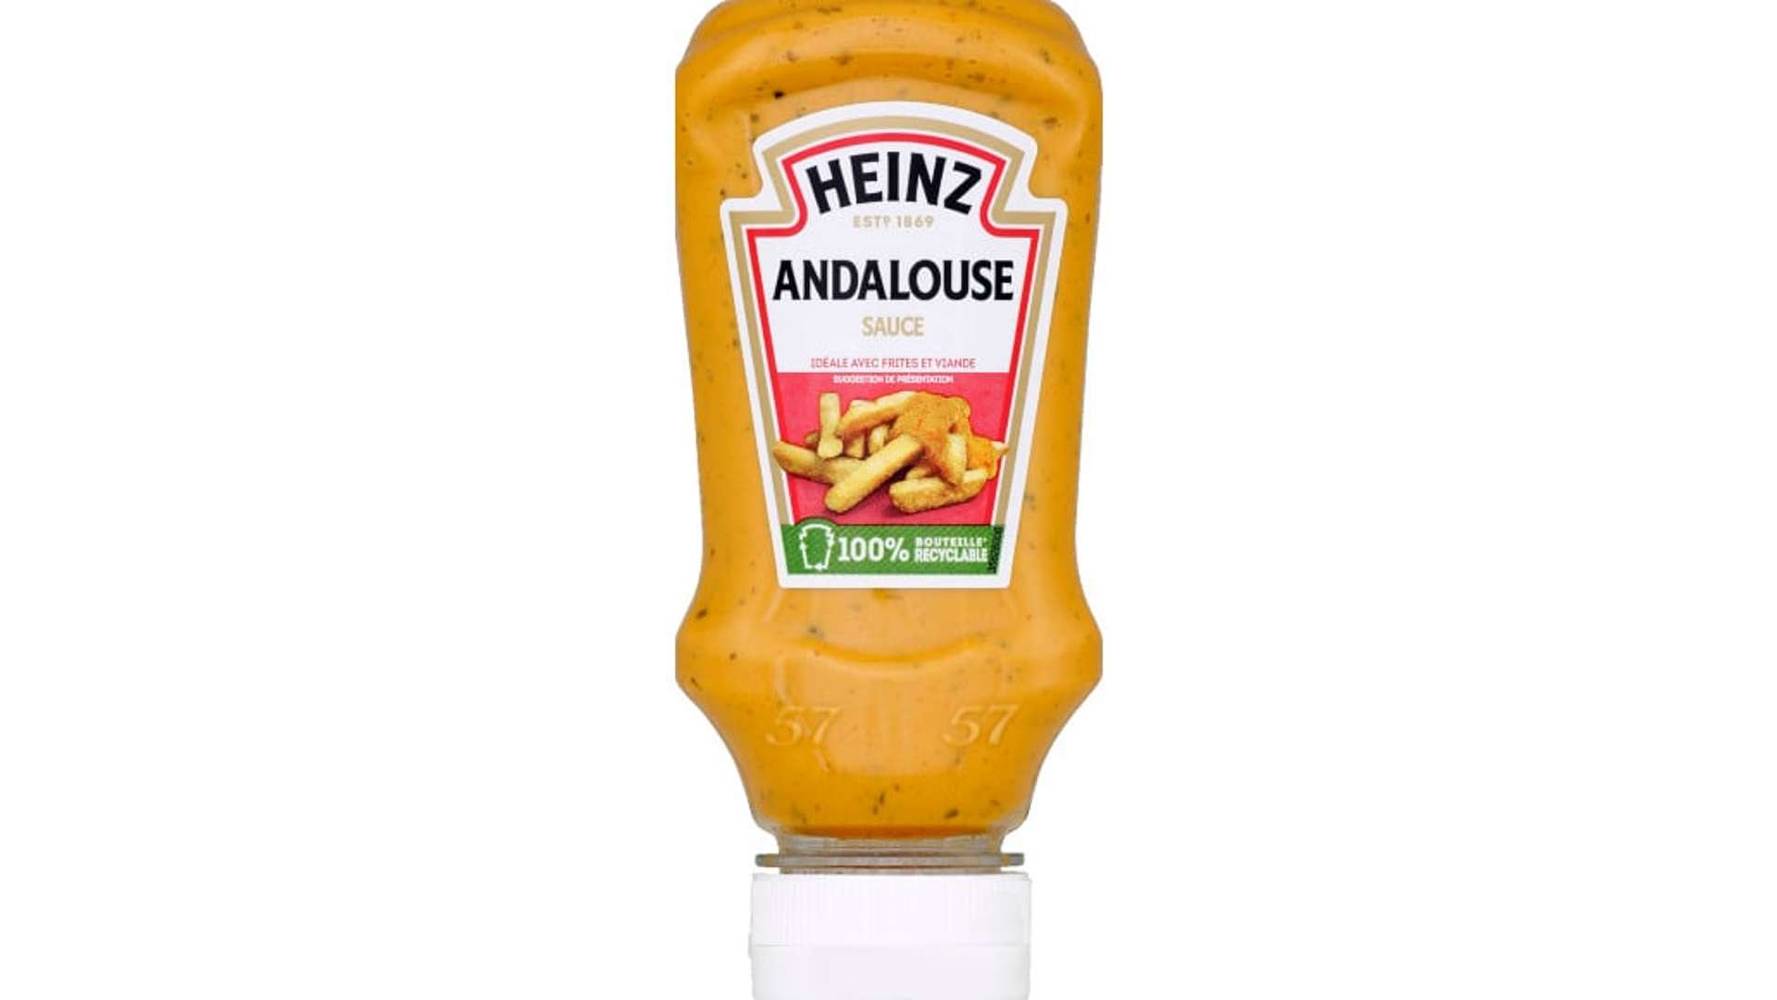 Heinz Sauce Andalouse, pimentée et onctueuse Le flacon souple de 220g